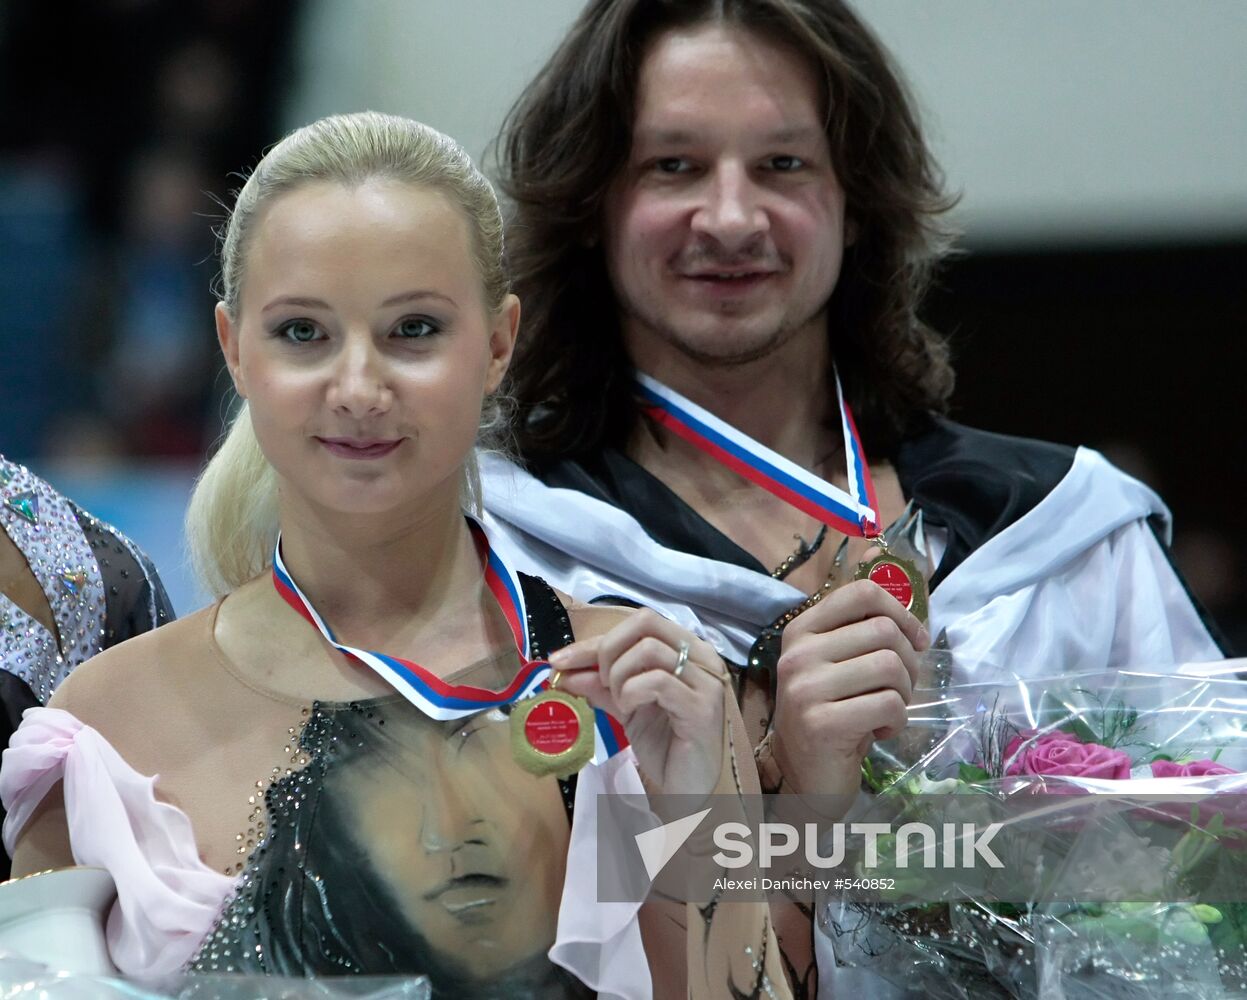 Oksana Domnina and Maxim Shabalin